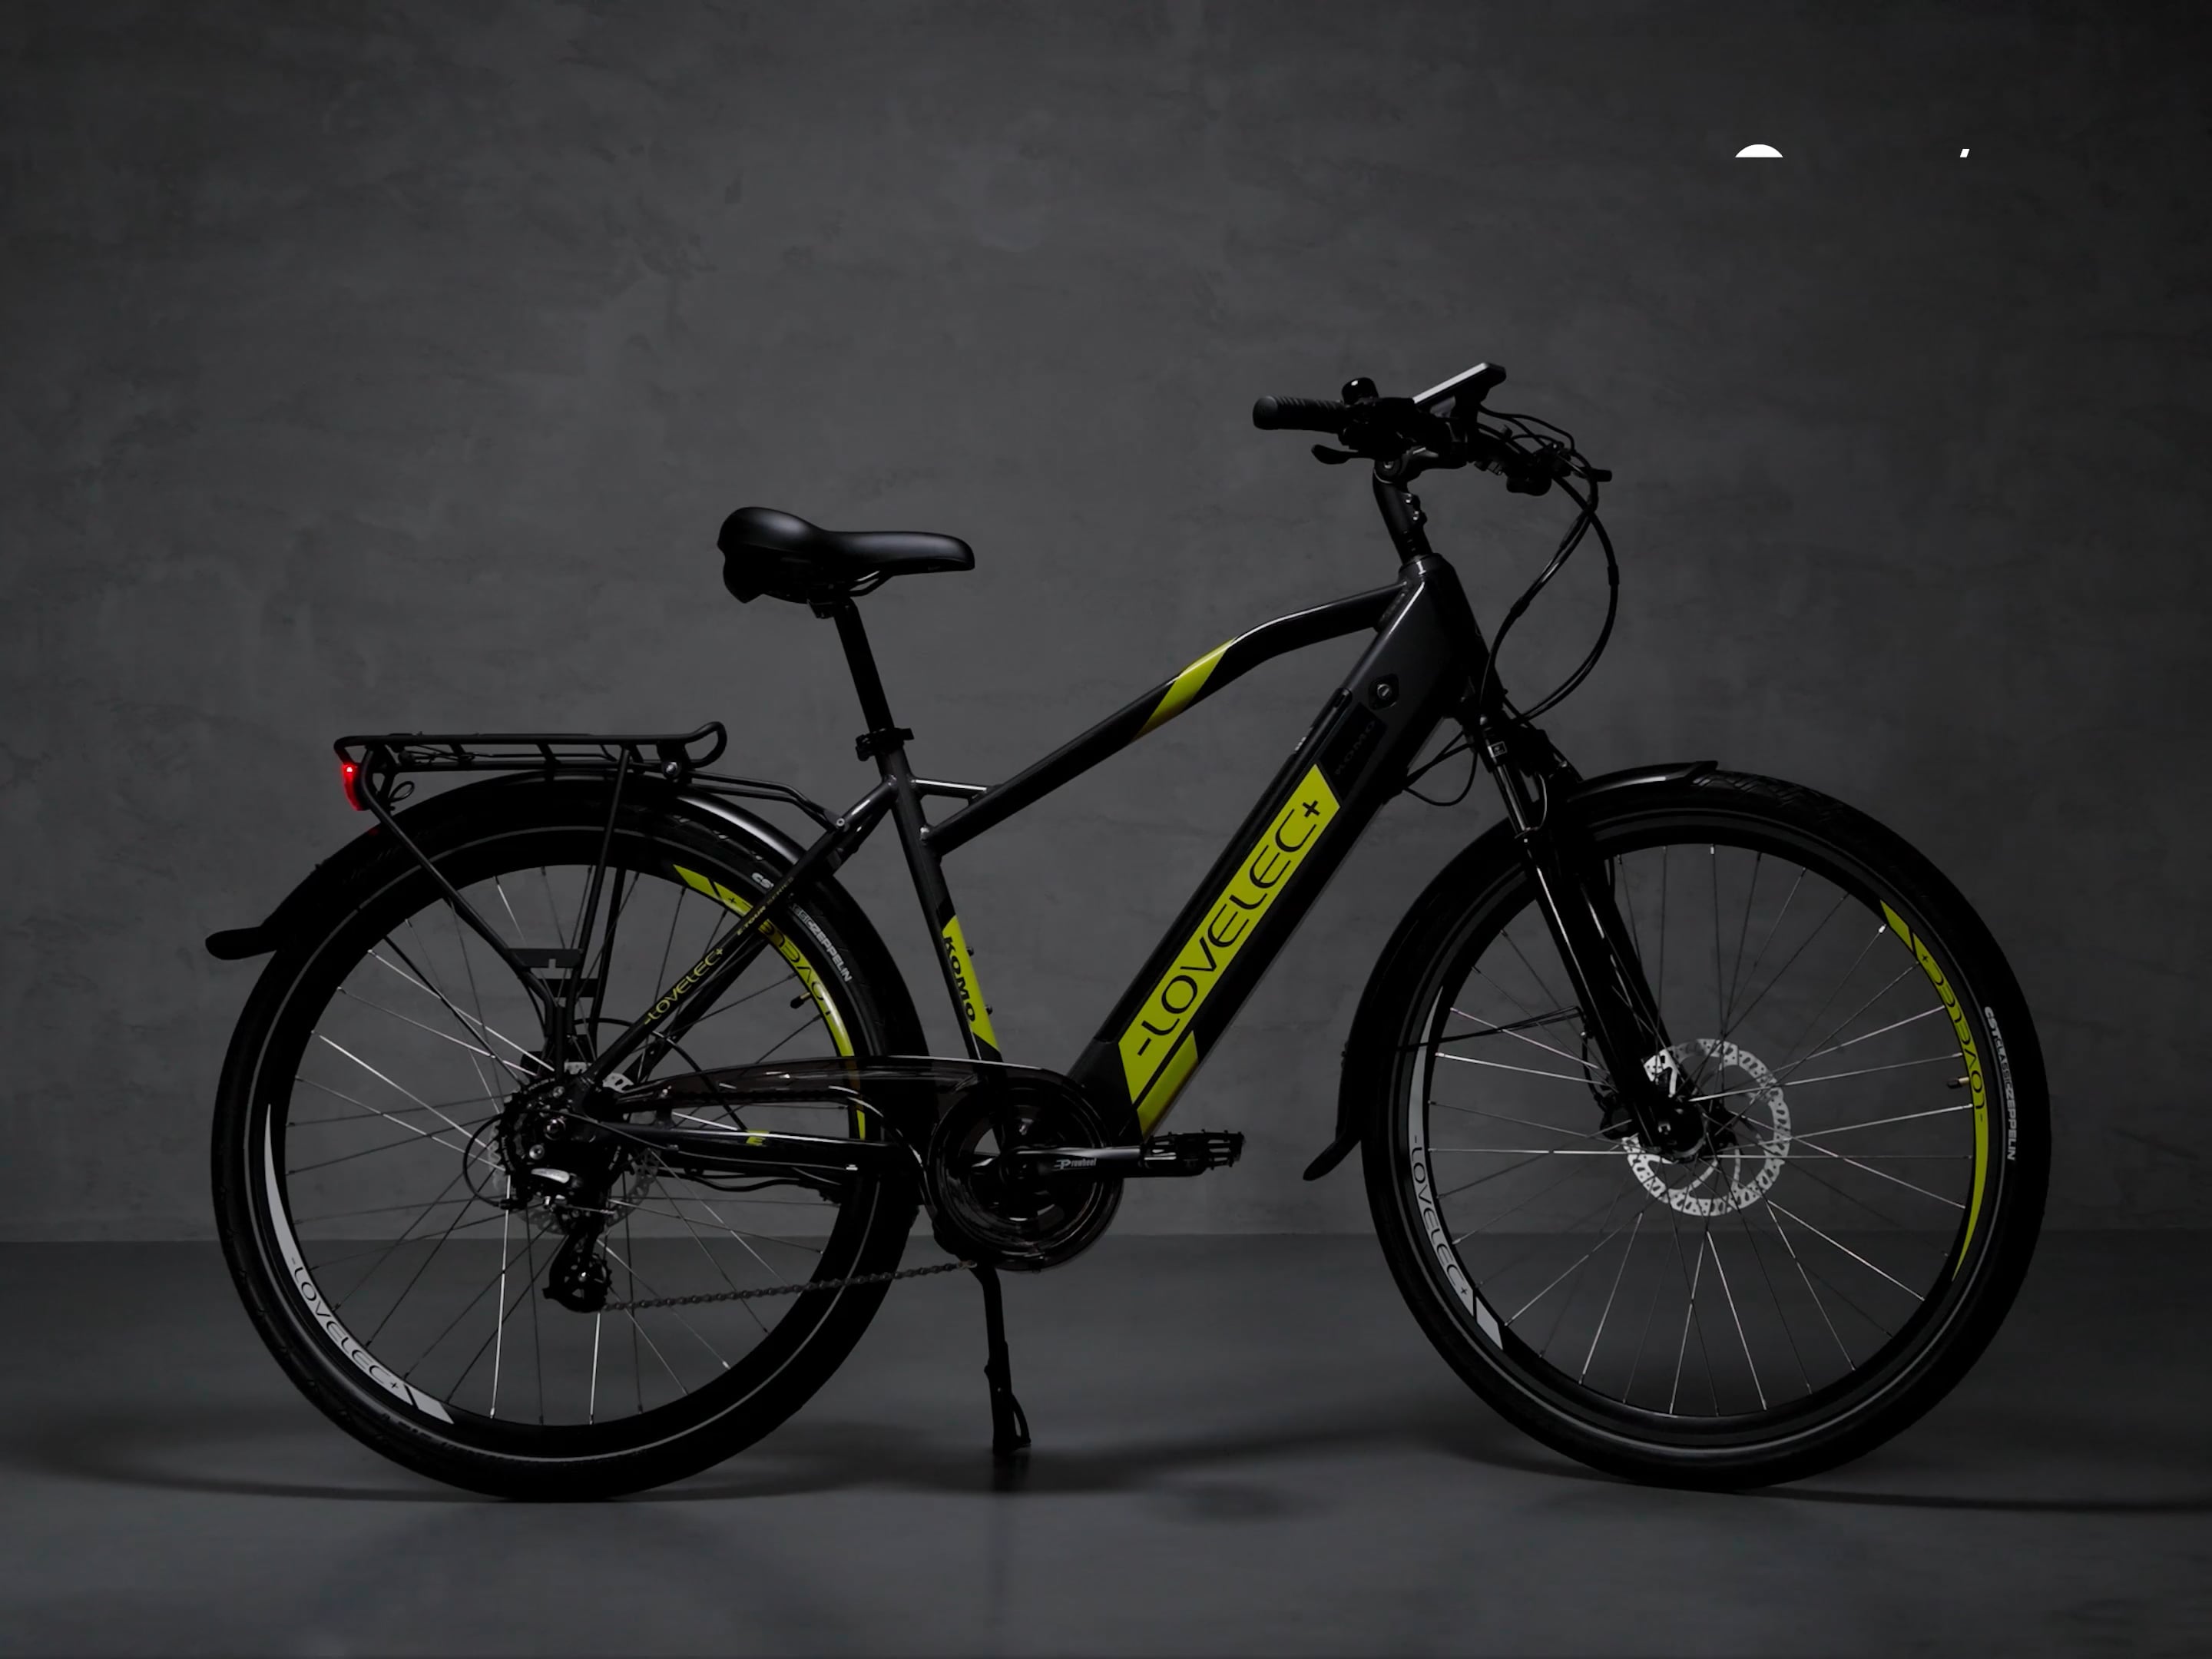 LOVELEC Komo Man 16Ah szürke-sárga elektromos kerékpár B400363